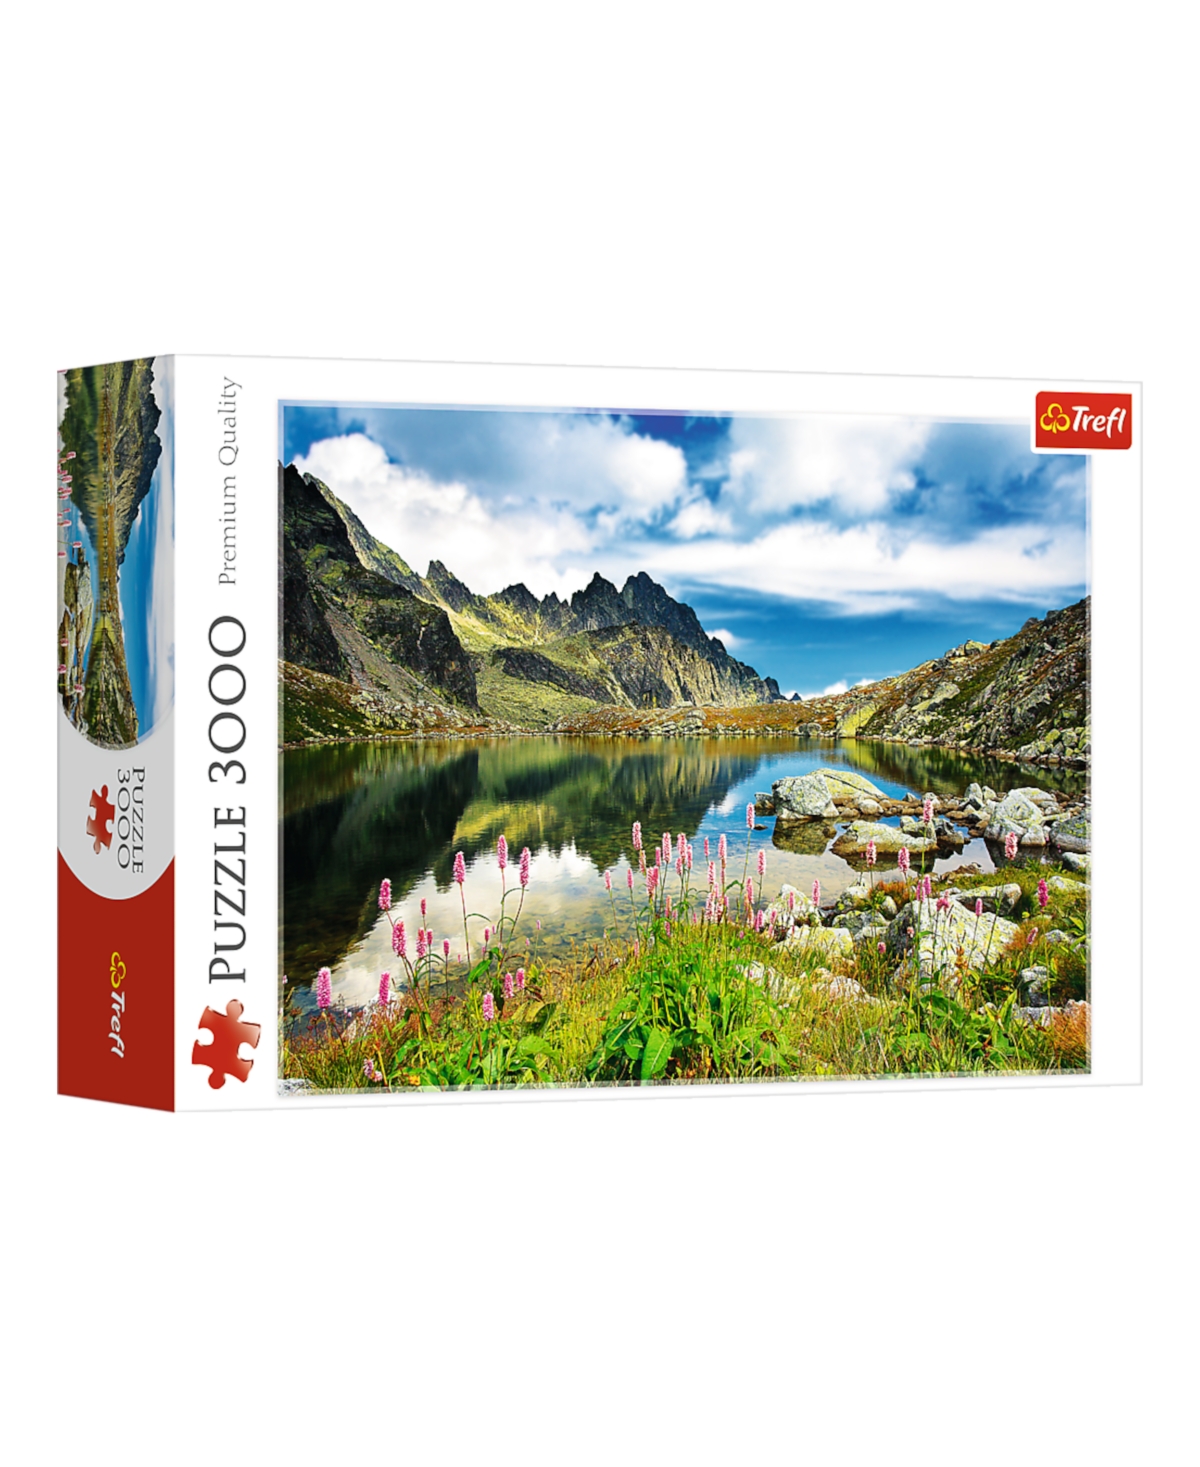 Trefl Red 3000 Piece Puzzle- Starole Nia Ski Pond, Tatras, Slovakia Or Wodarczyk In Multi